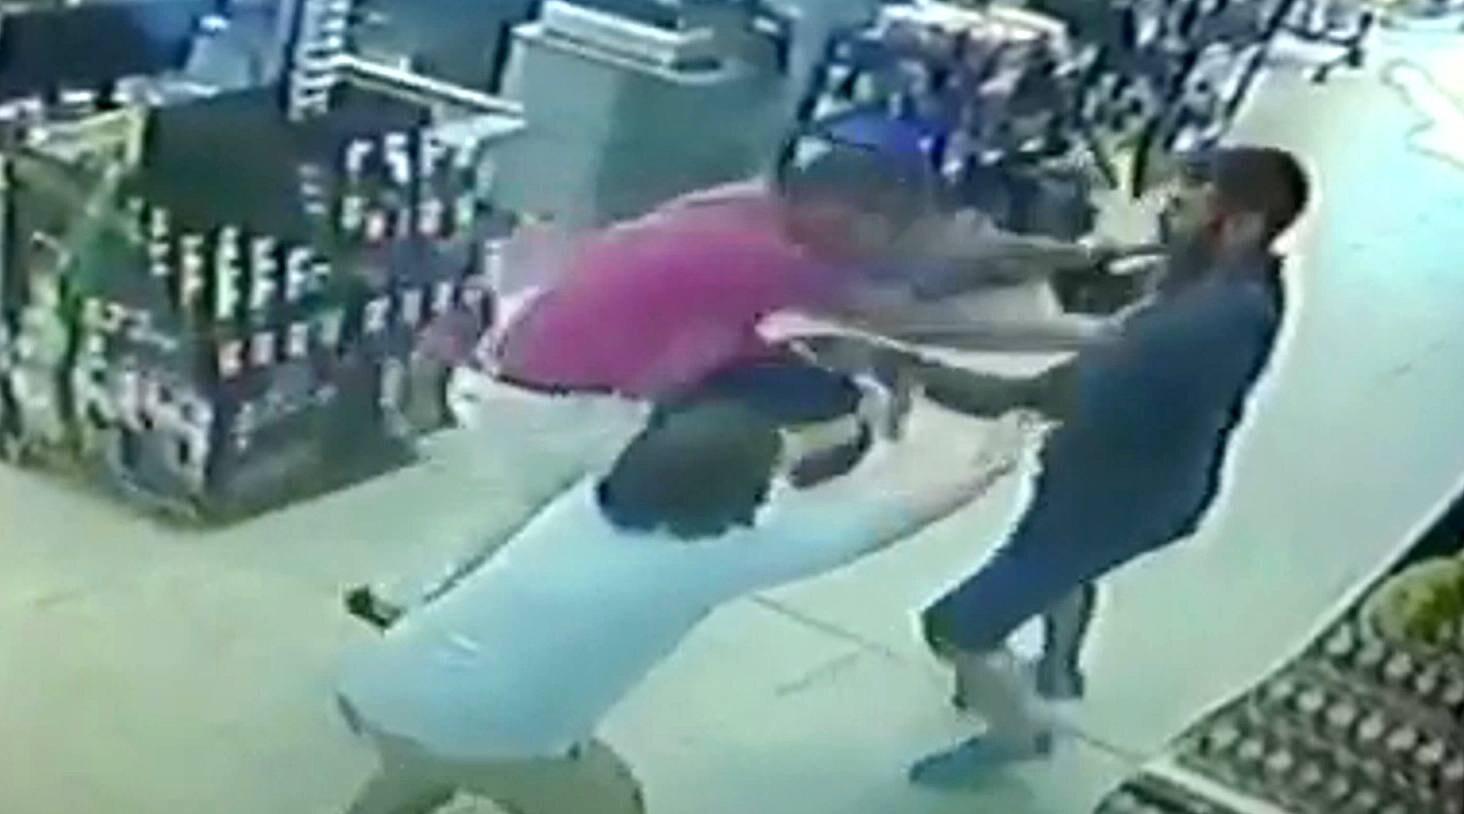 Fotograma del vídeo captado por las cámaras de seguridad del establecimiento donde se produjo la agresión.